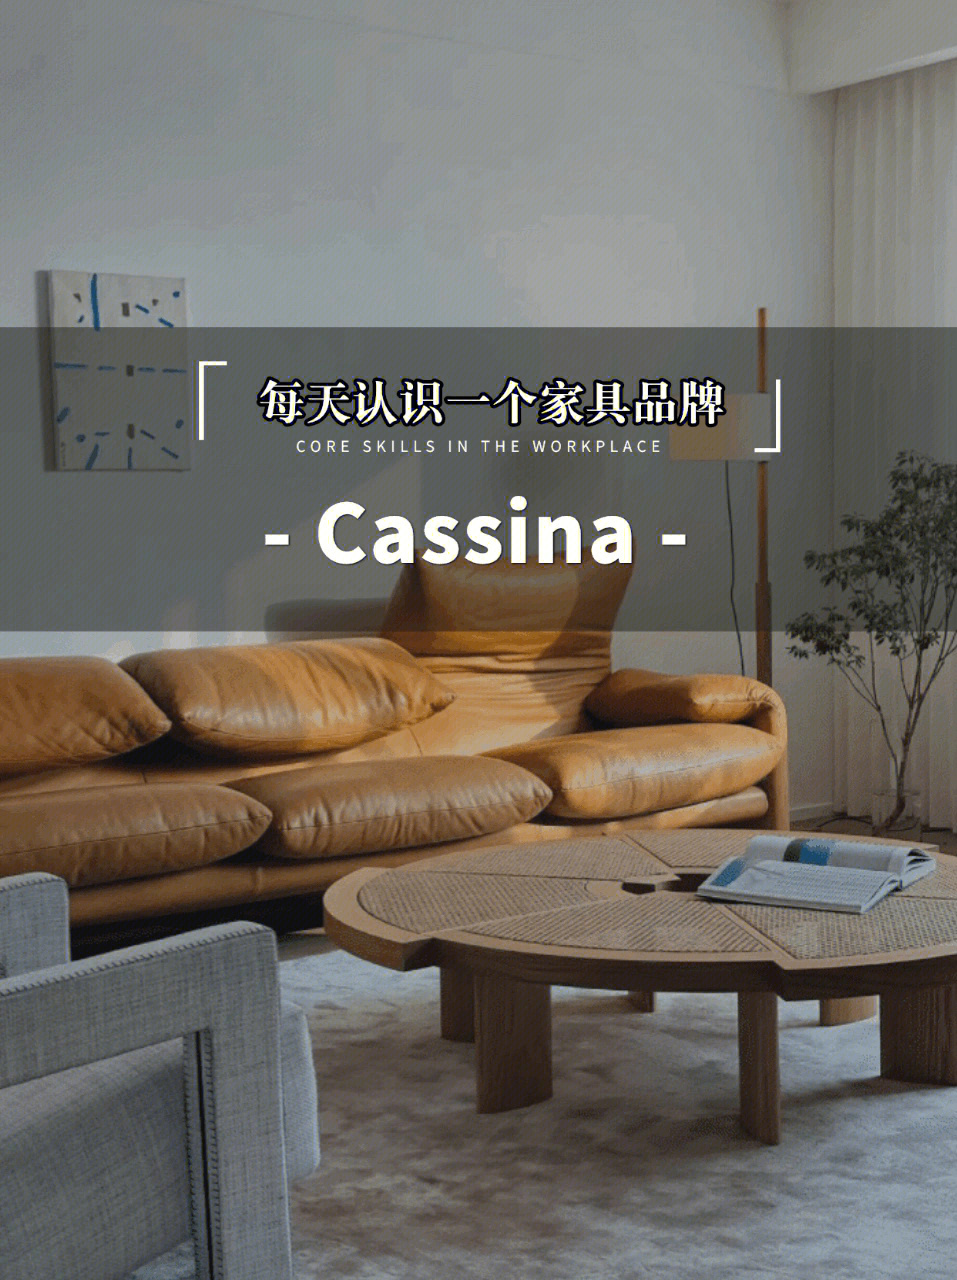 意大利网红沙发天花板cassina